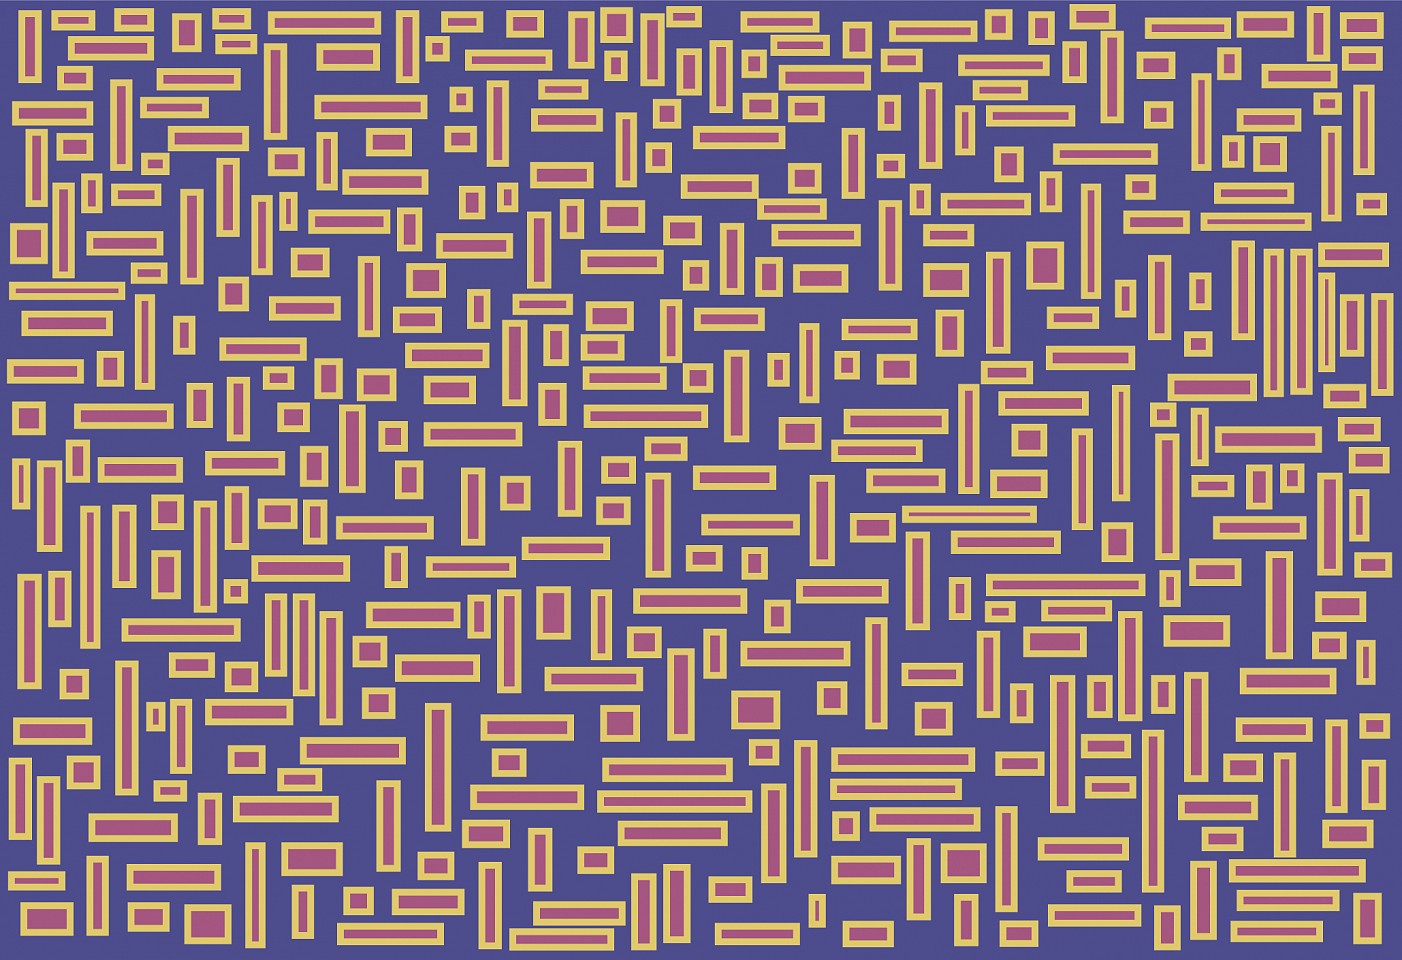 Dane Albert, Color Blocks #39, 2023
Acrylic on canvas (Concept), 48 x 60 in. (121.9 x 152.4 cm)
Series of colored blocks in multiple configurations
DA.cb-2023-039